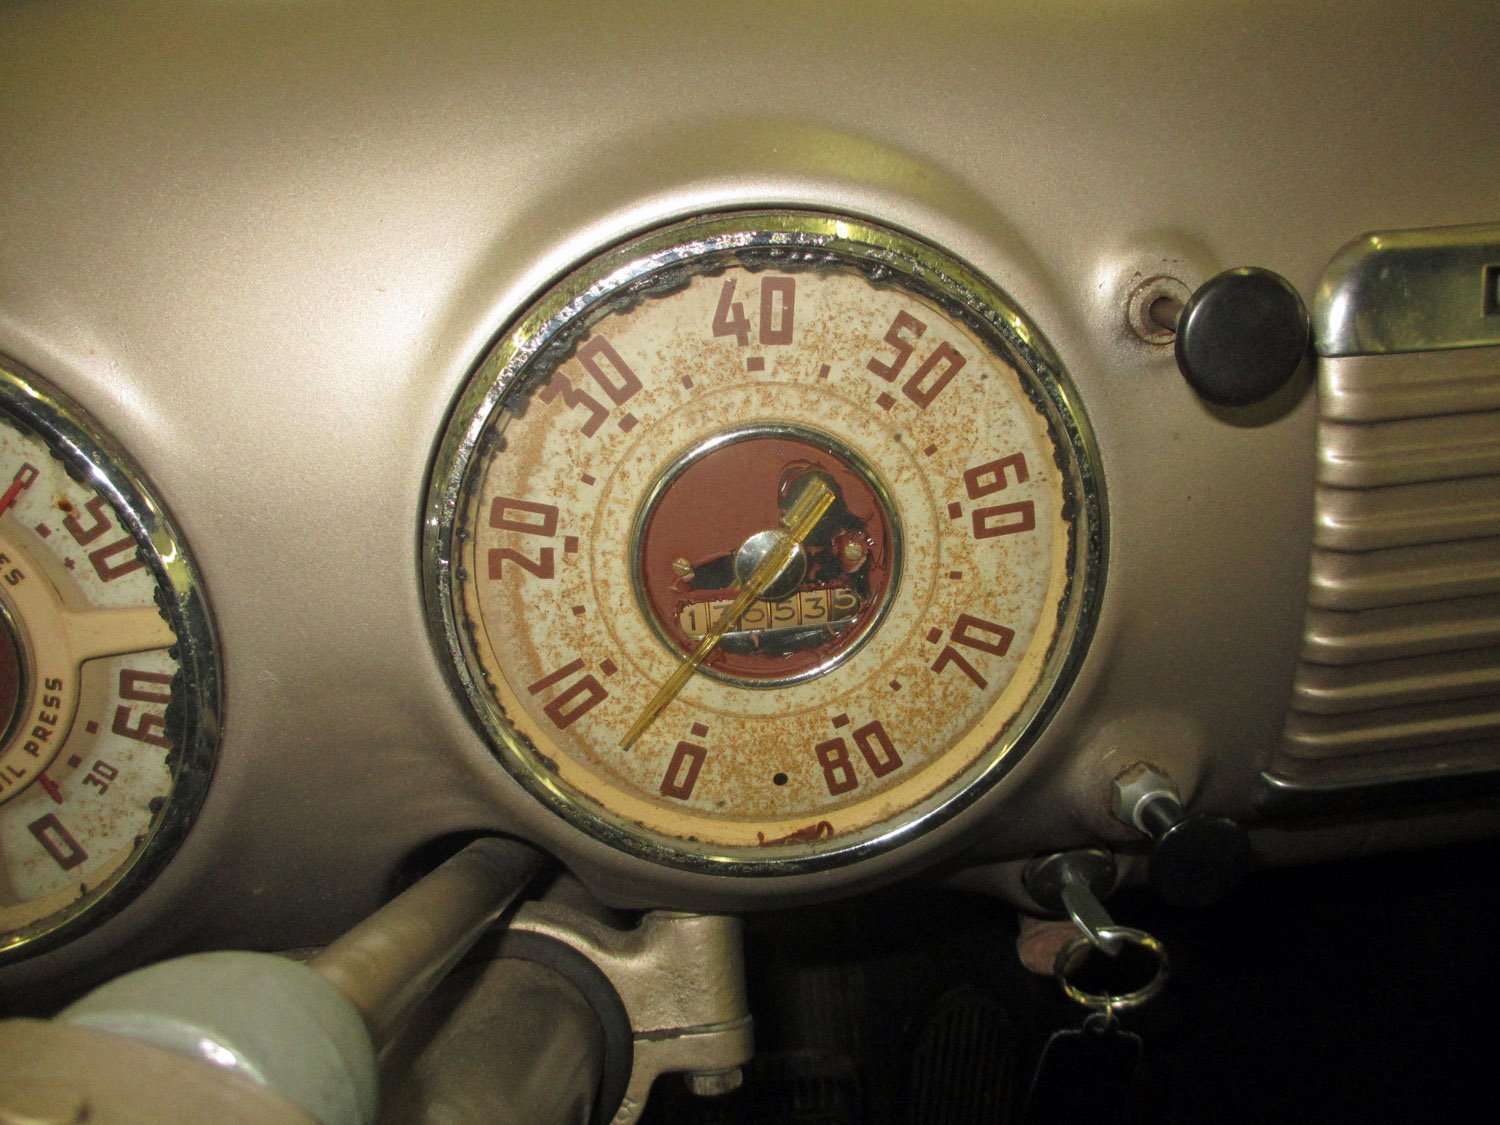 1949 GMC 100